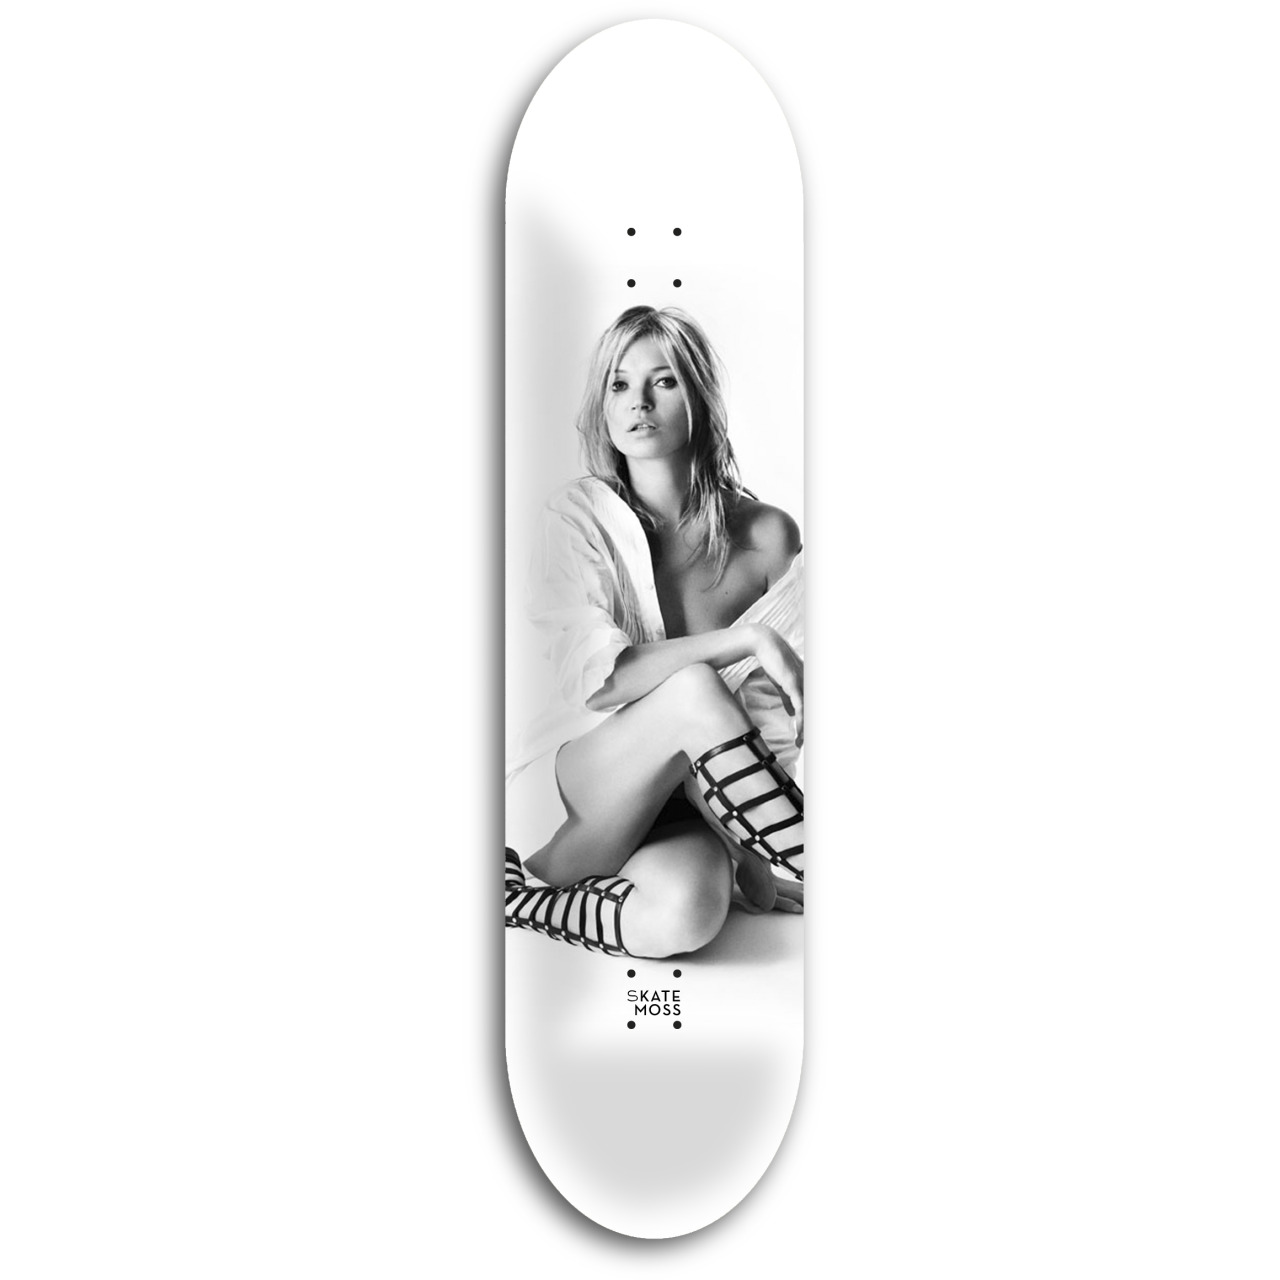 Skateboard + Kate Moss = Skate Moss. 